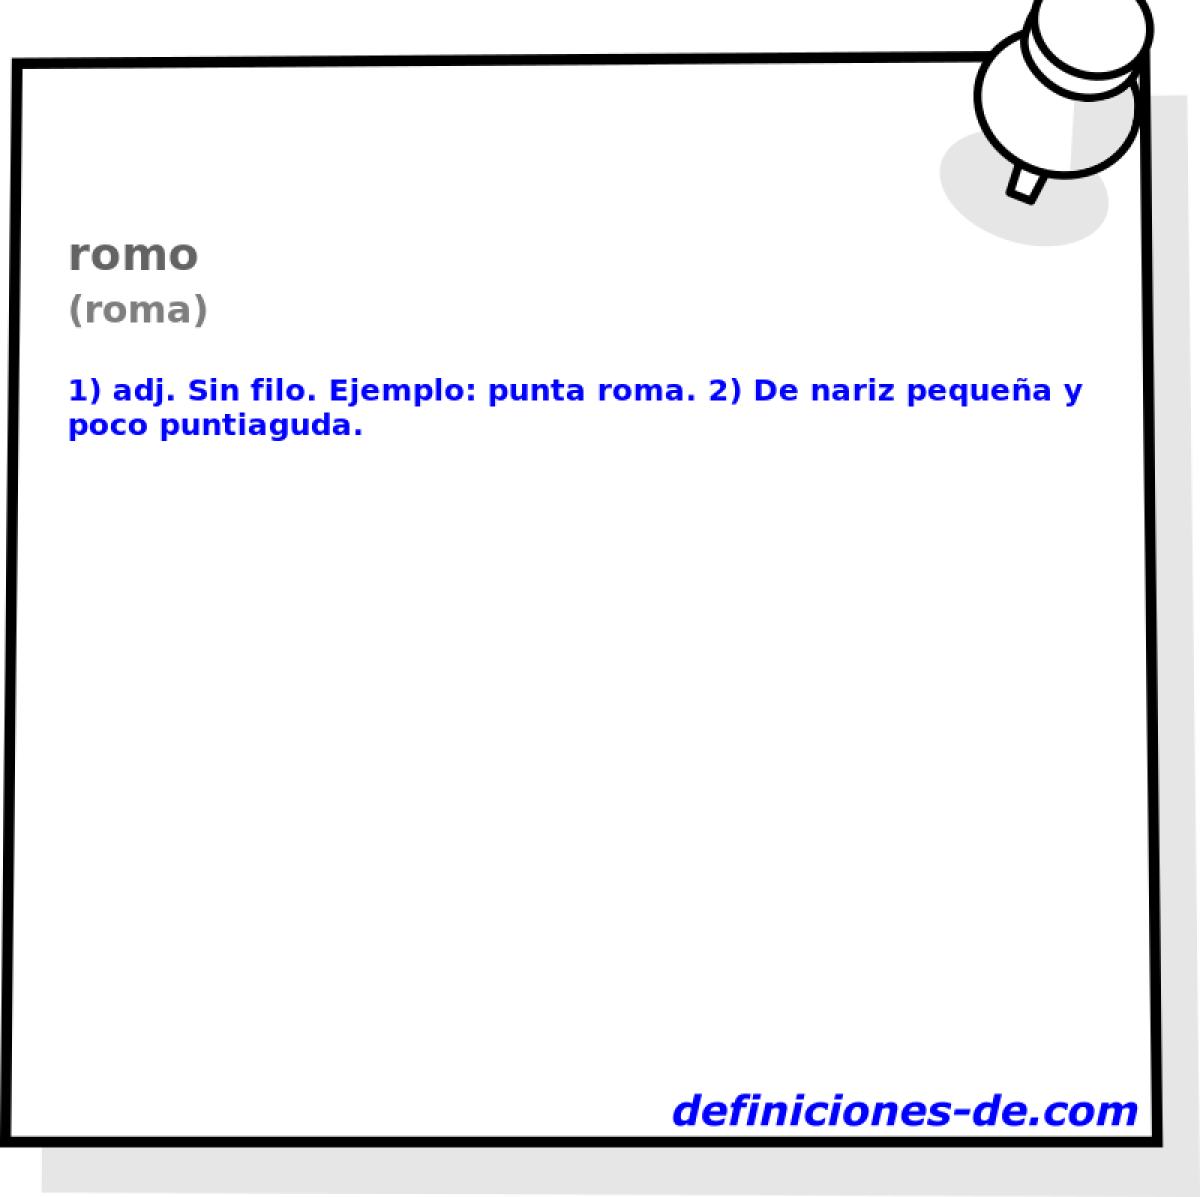 romo (roma)